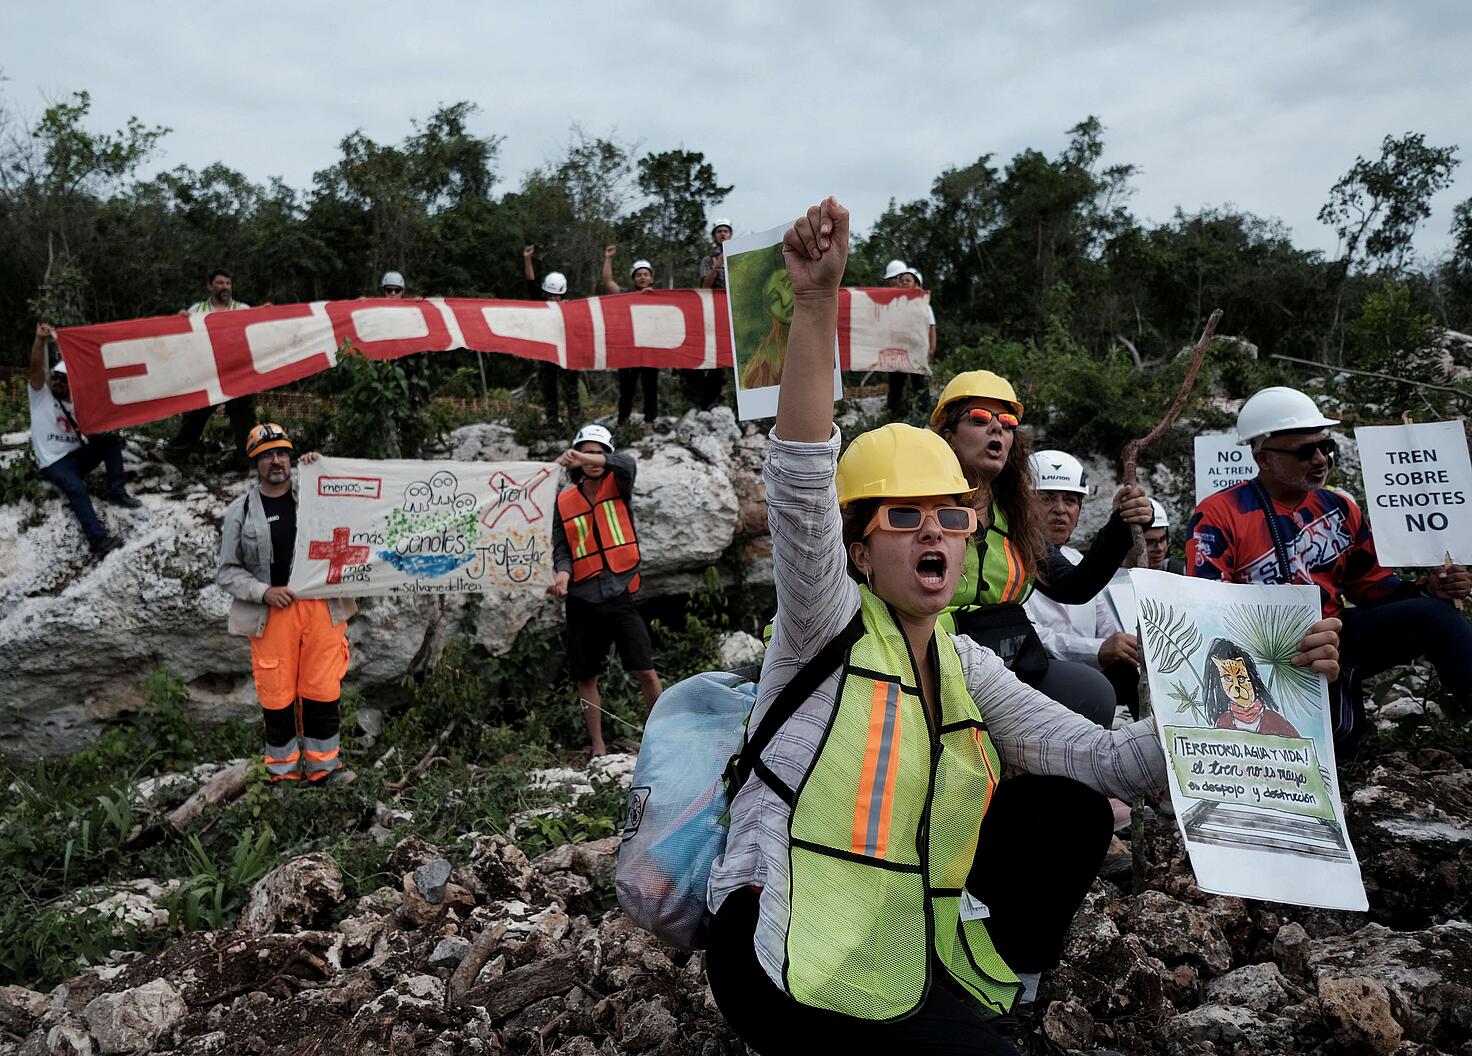 93 defensores del ambiente y territorio han sido desaparecidos